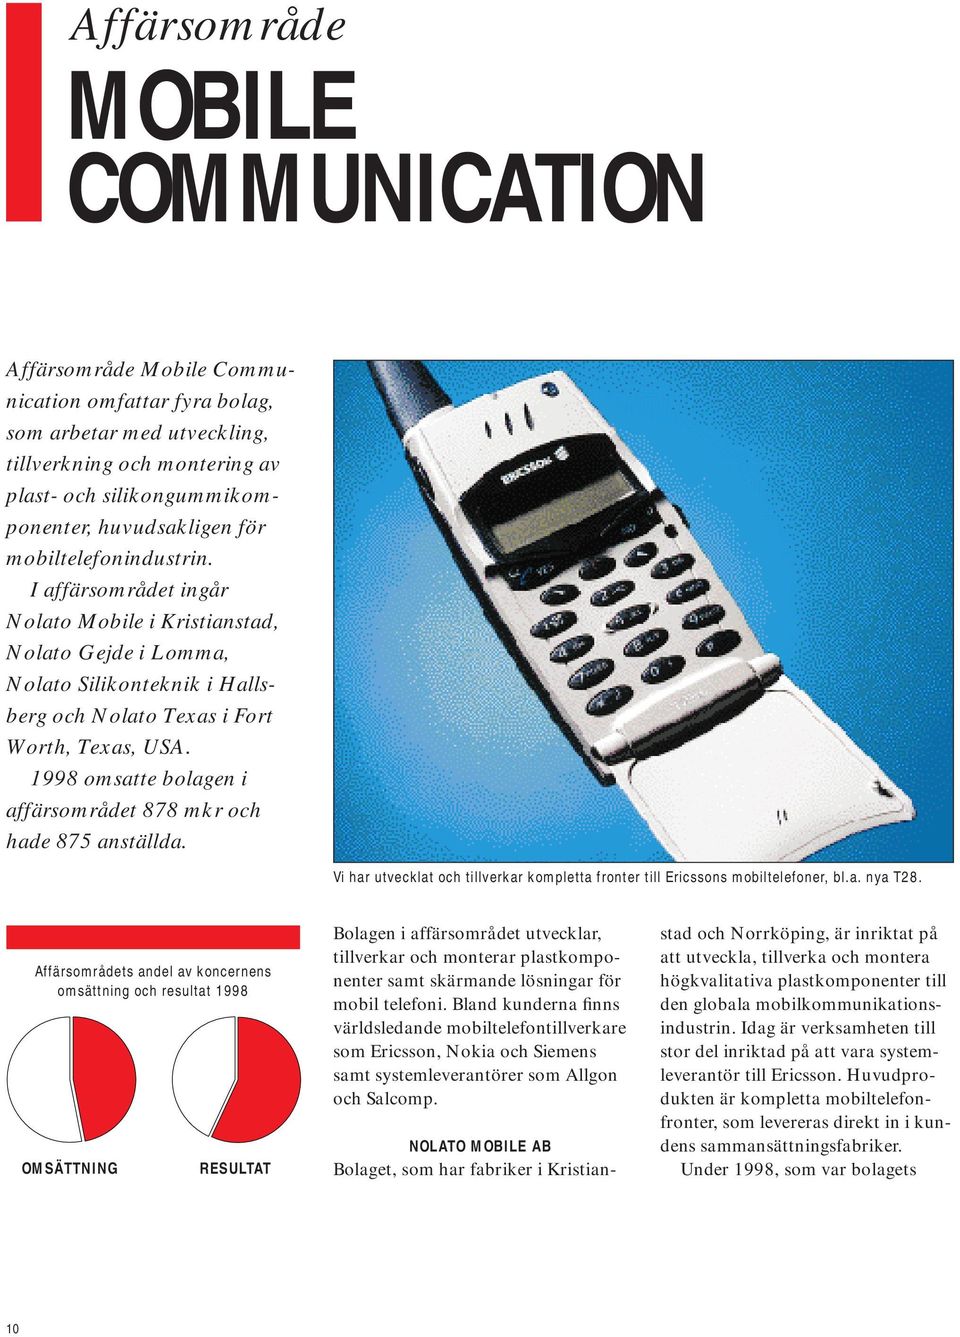 1998 omsatte bolagen i affärsområdet 878 mkr och hade 875 anställda. Vi har utvecklat och tillverkar kompletta fronter till Ericssons mobiltelefoner, bl.a. nya T28.